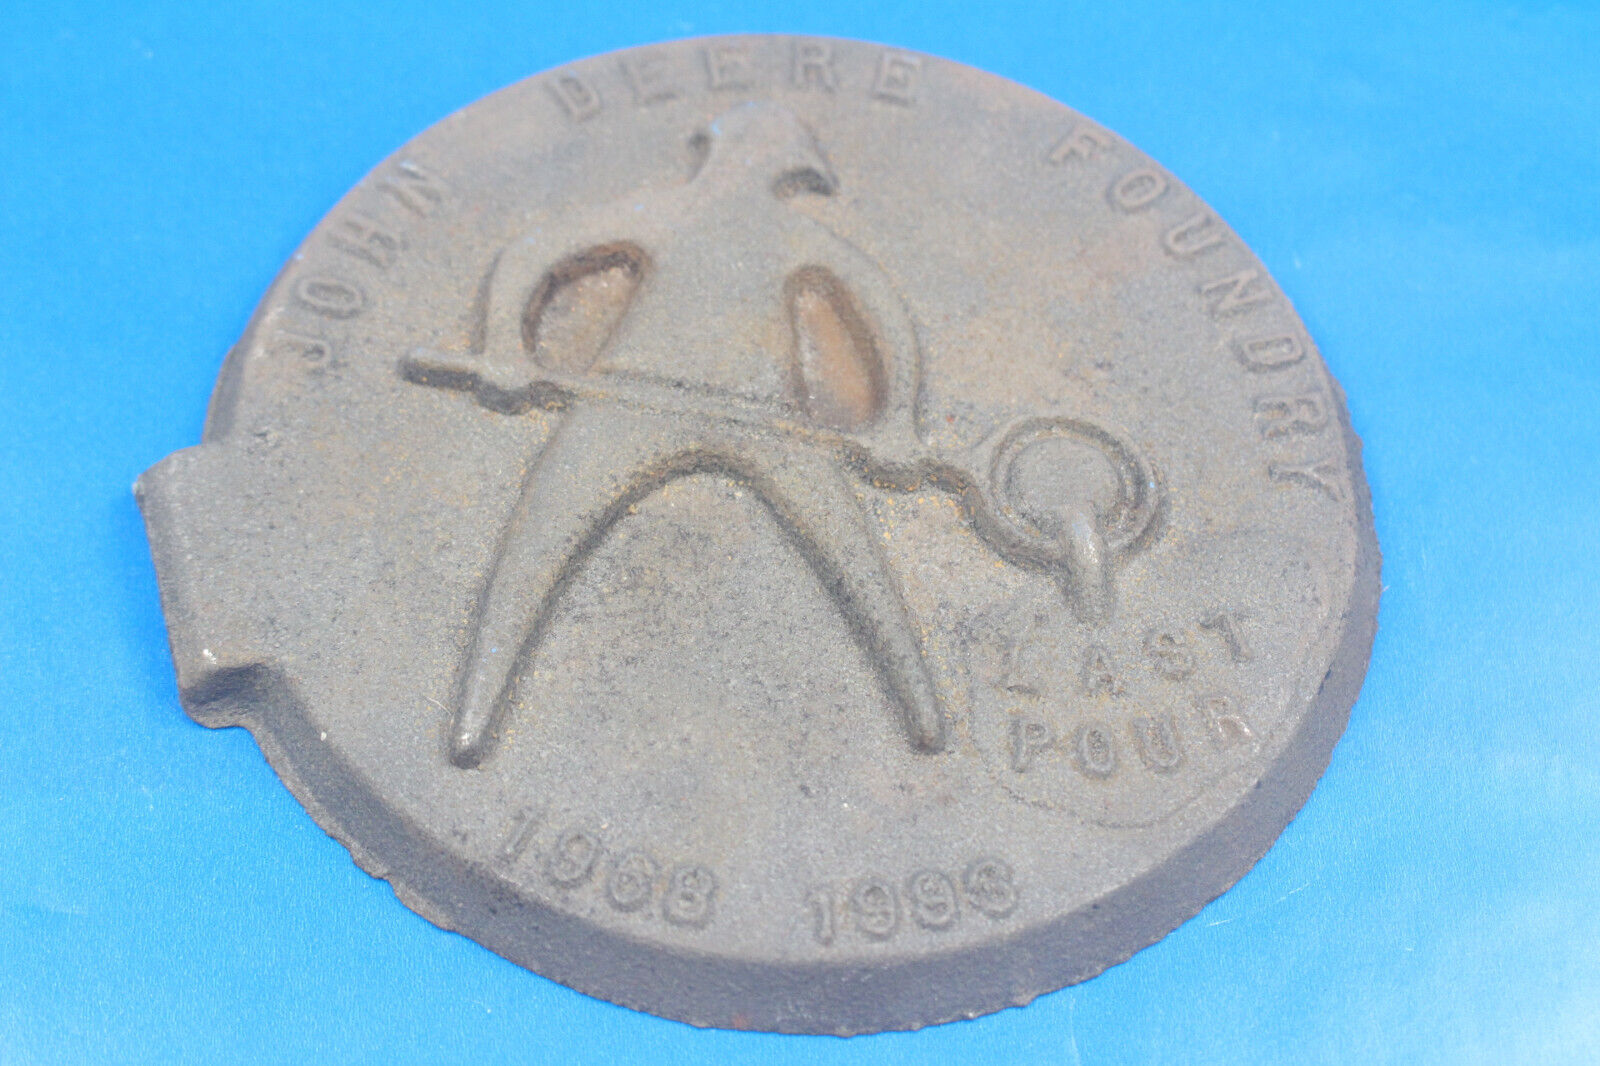 JOHN DEERE FOUNDRY MEDALLION plaque cast iron vintage RARE last pour antique